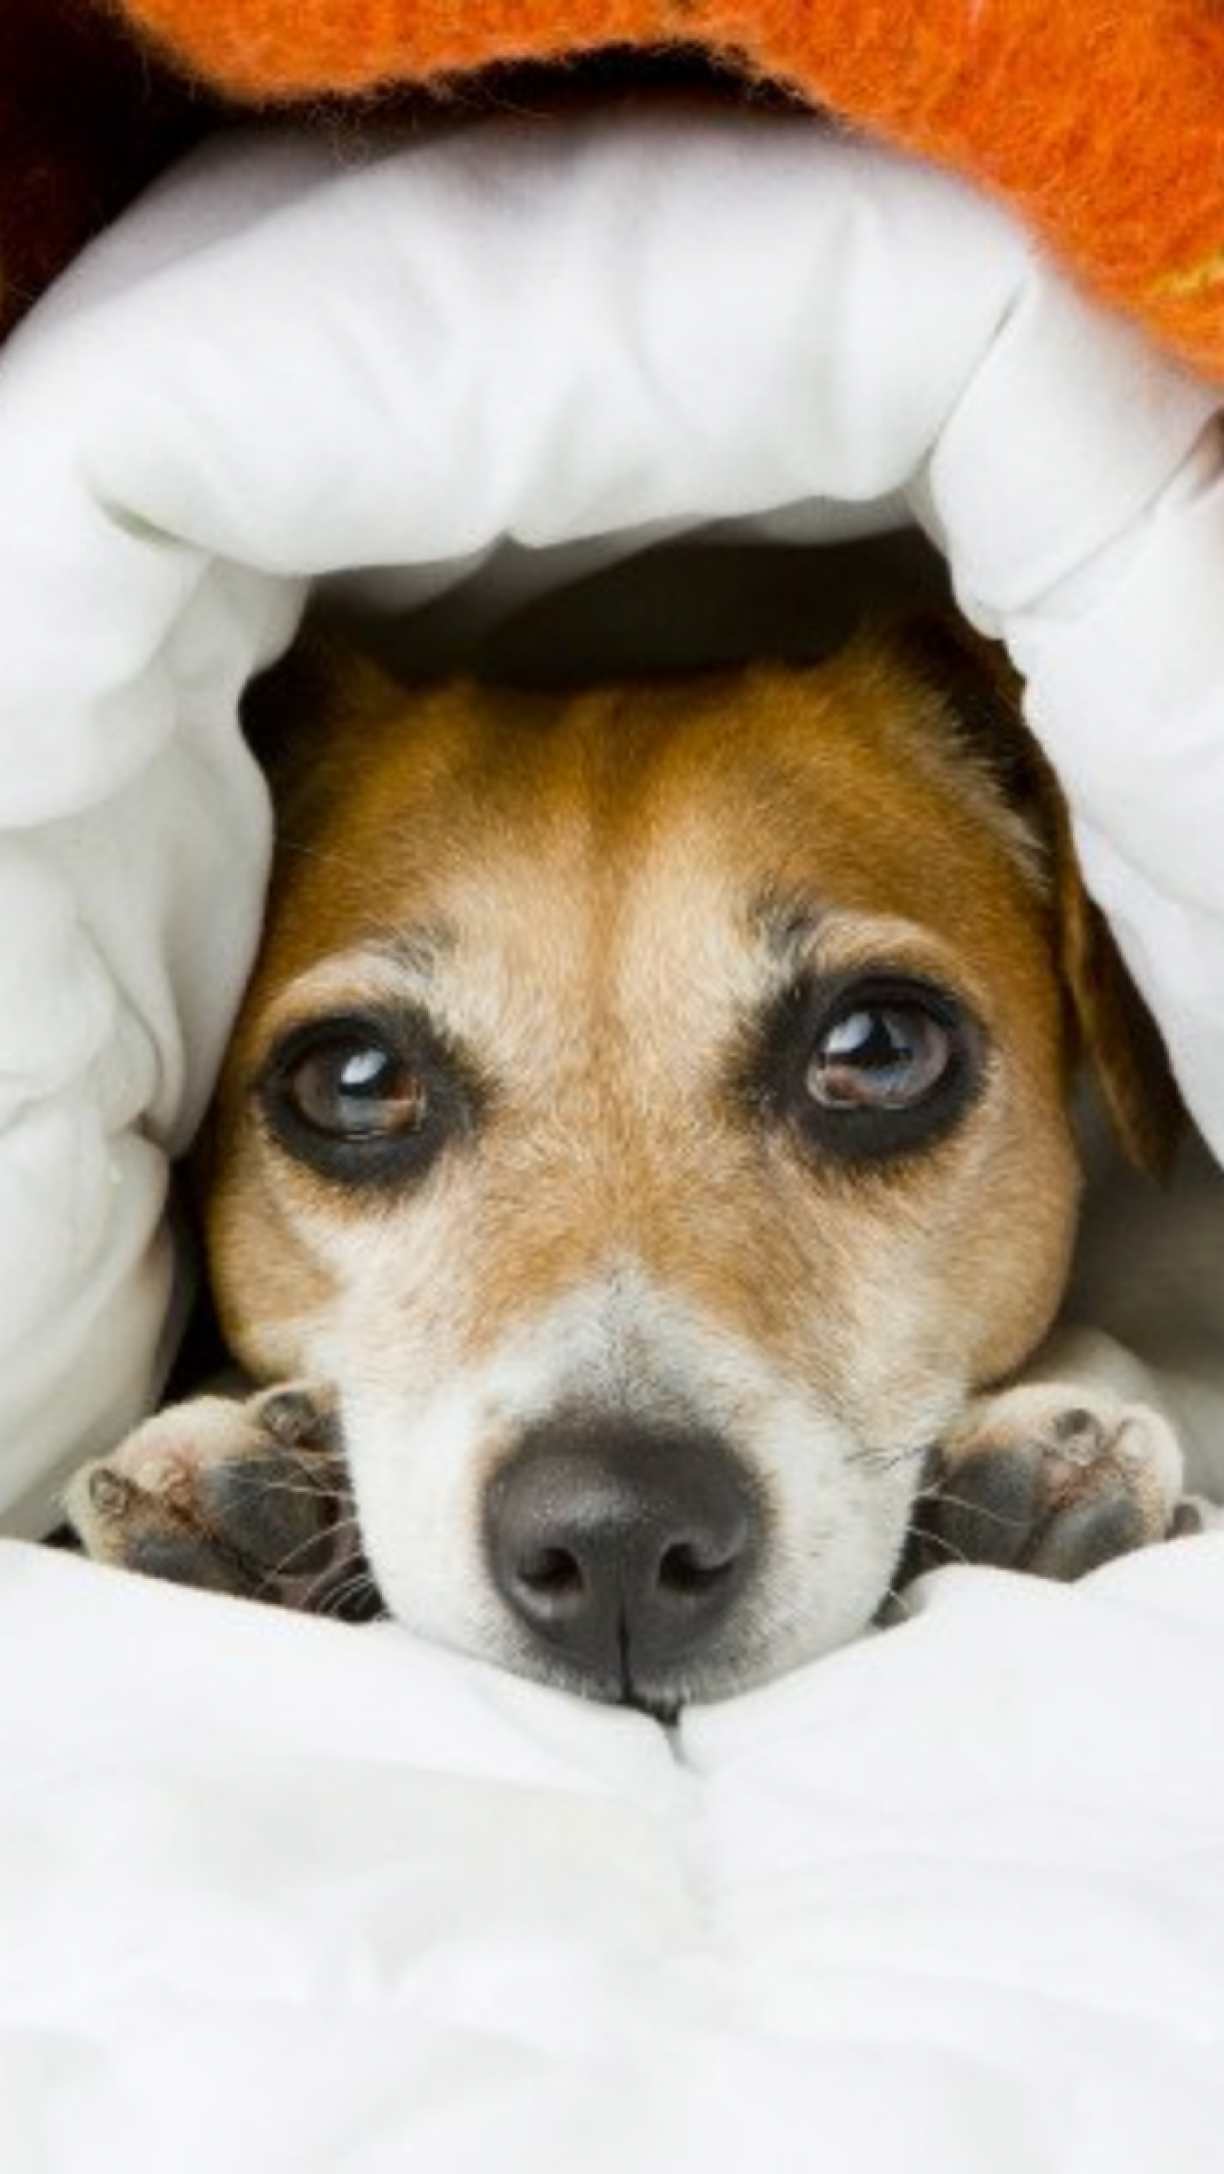 Cachorro gripado: sintomas e tratamentos